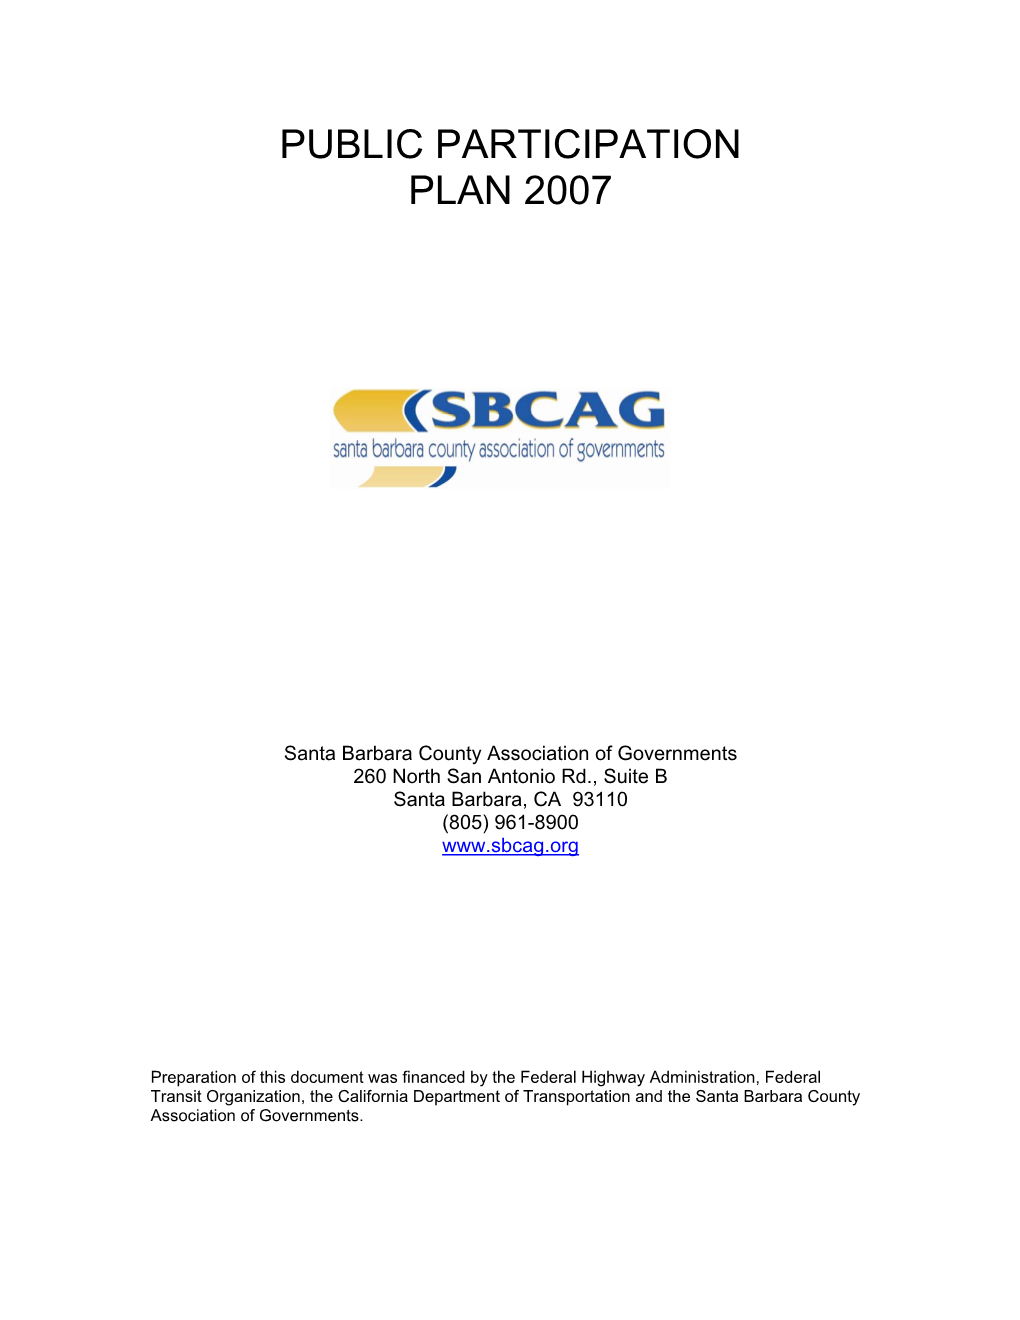 Public Participation Plan 2007